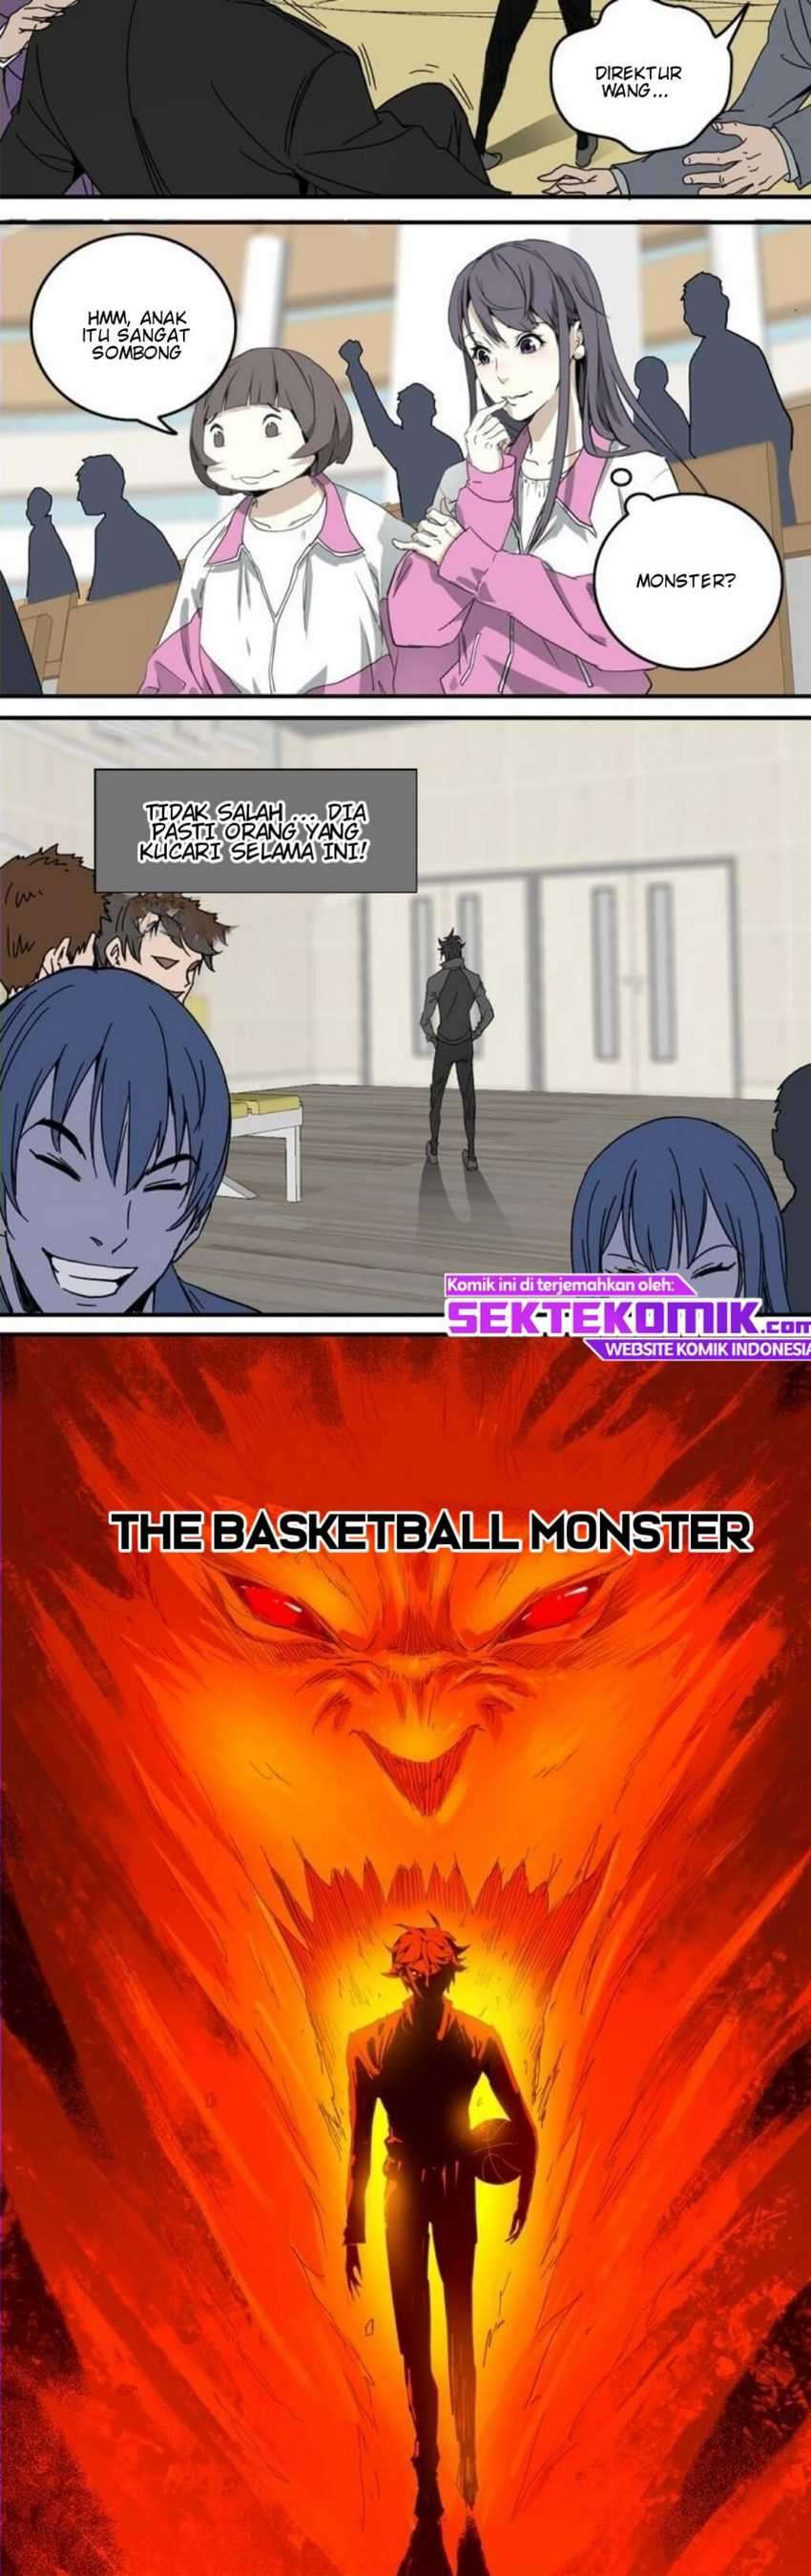 Basketball Monster Chapter 1 27